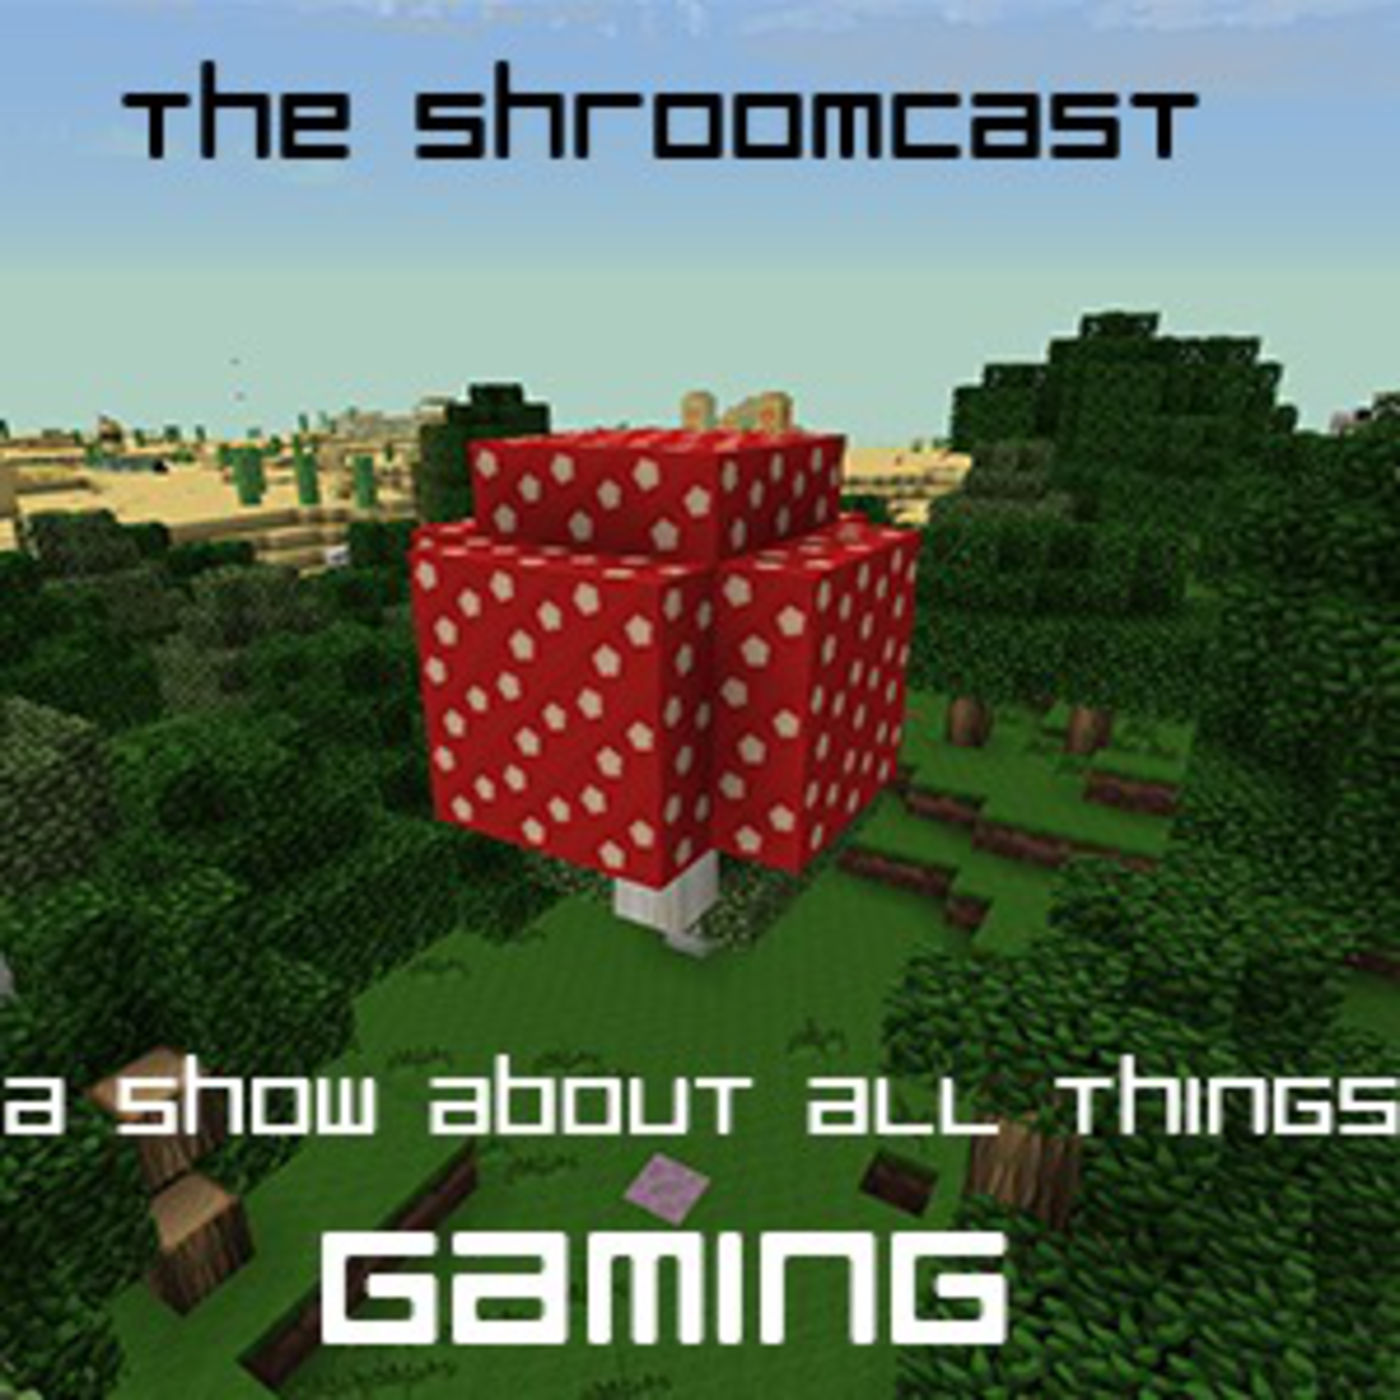 The Shroomcast